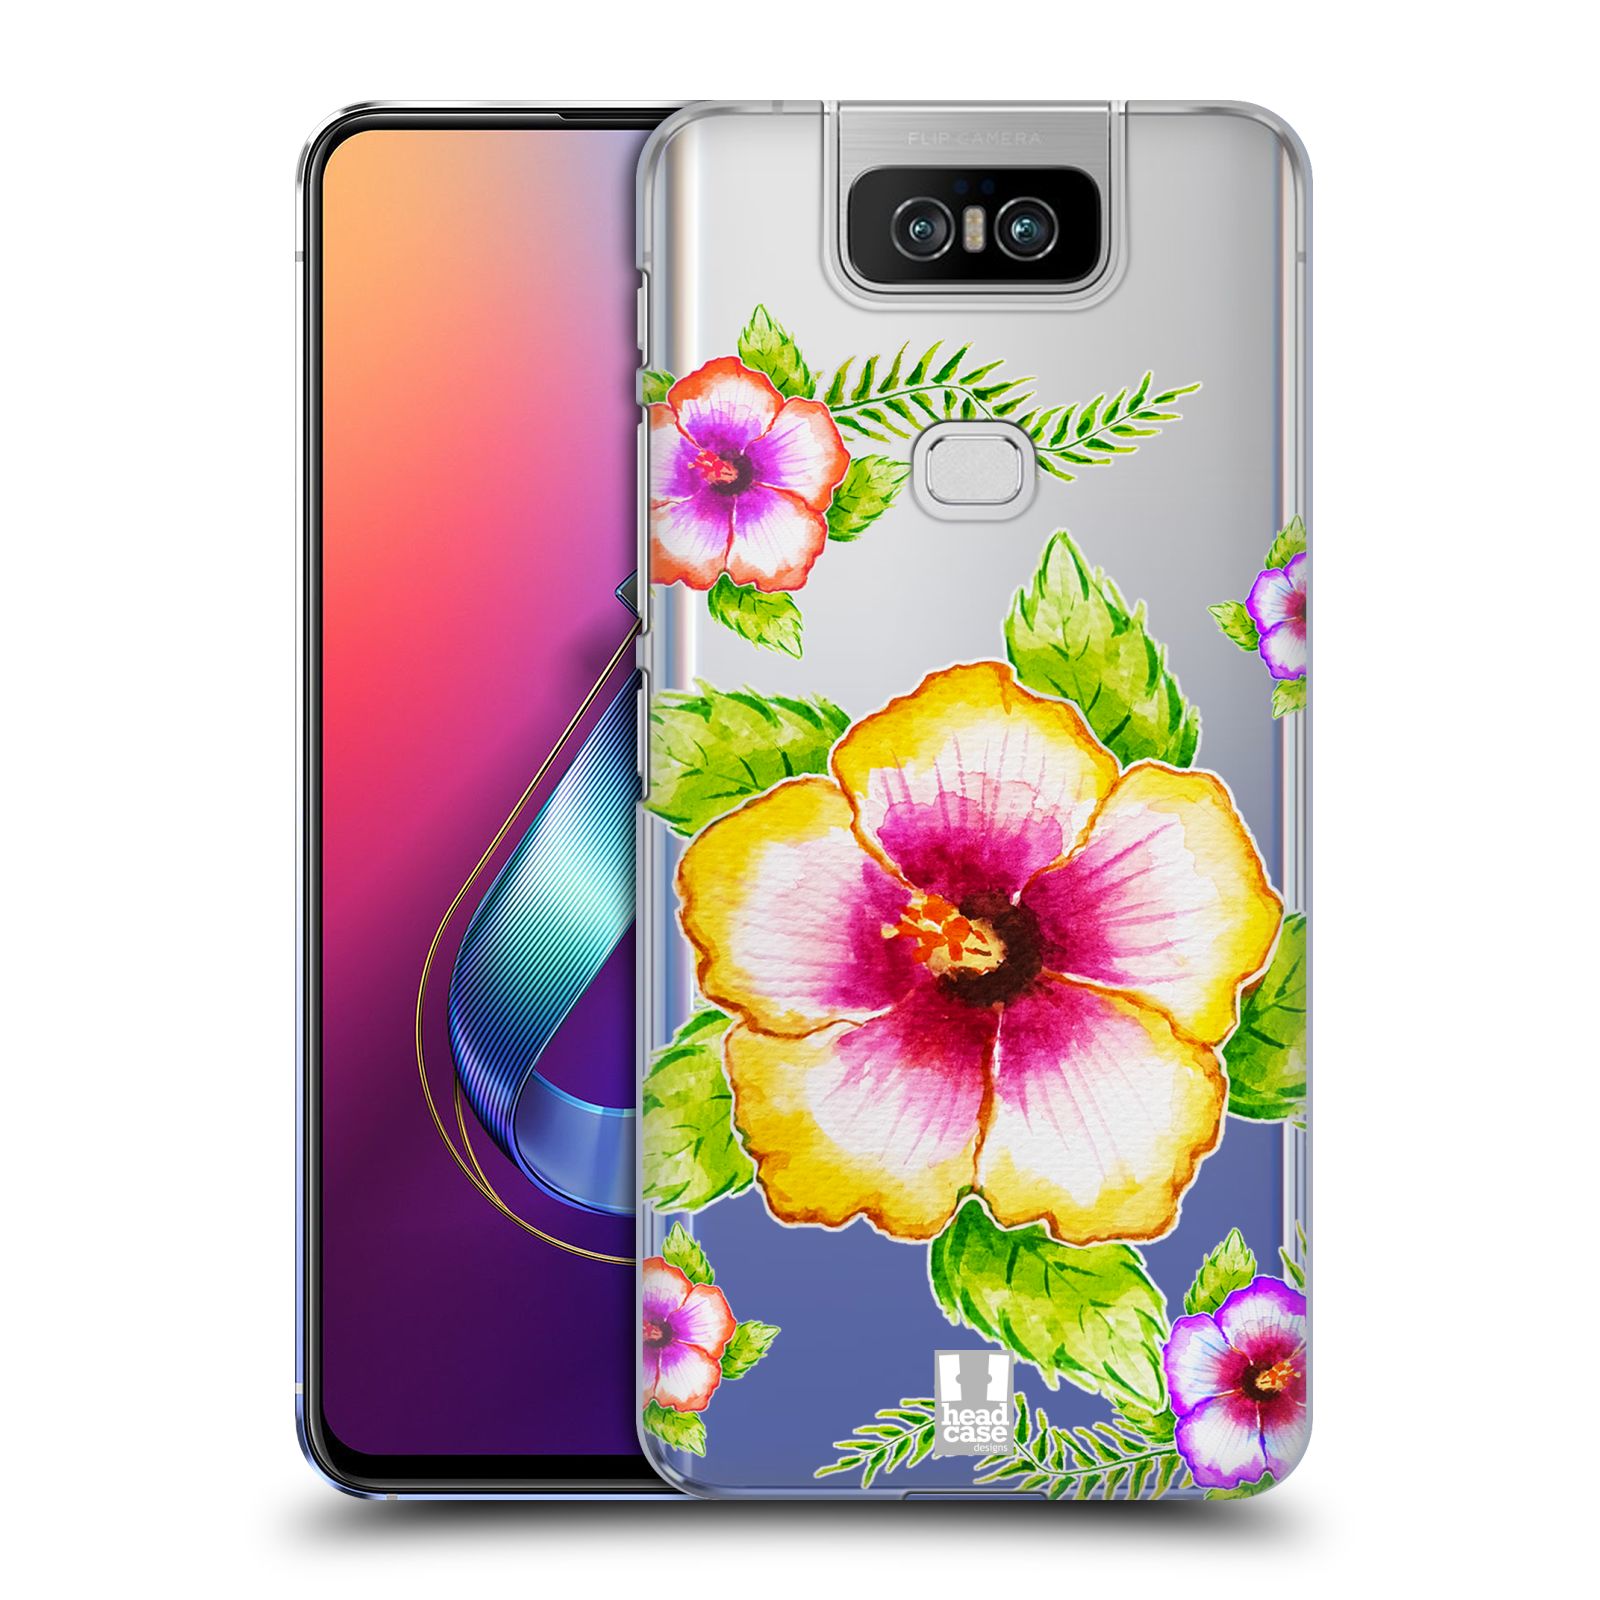 Pouzdro na mobil Asus Zenfone 6 ZS630KL - HEAD CASE - Květina Ibišek vodní barvy